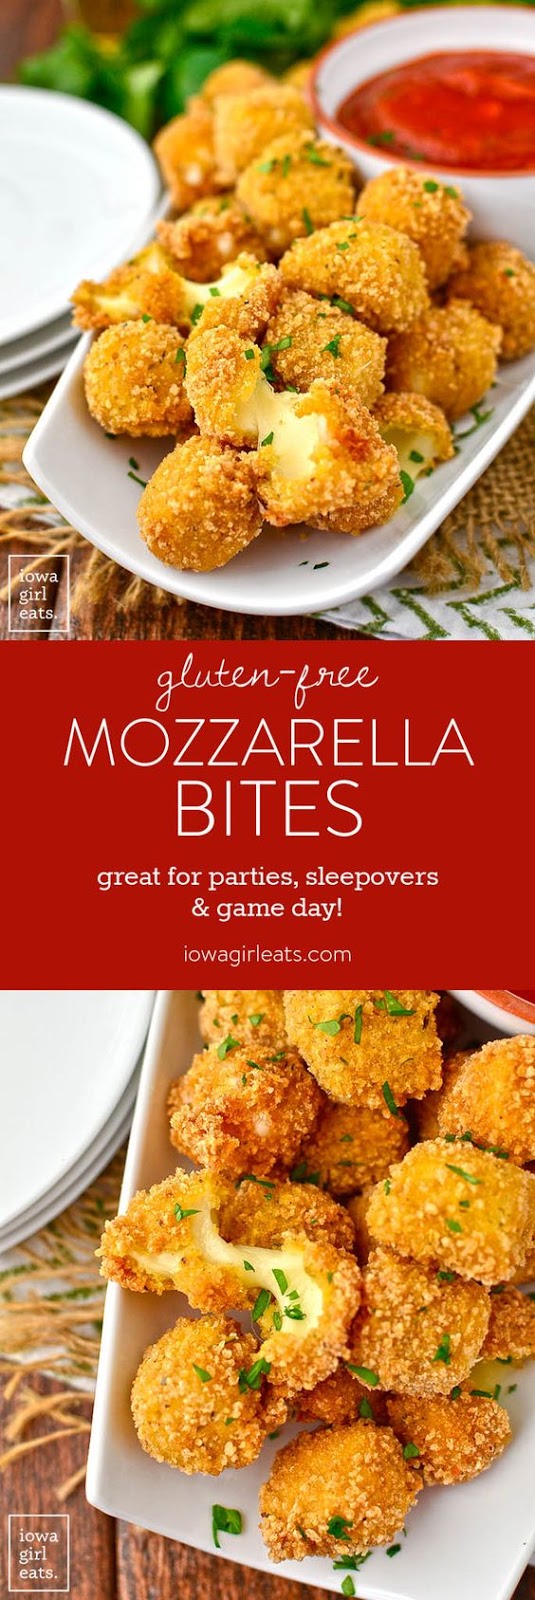 Gluten-Free Mozzarella Bites